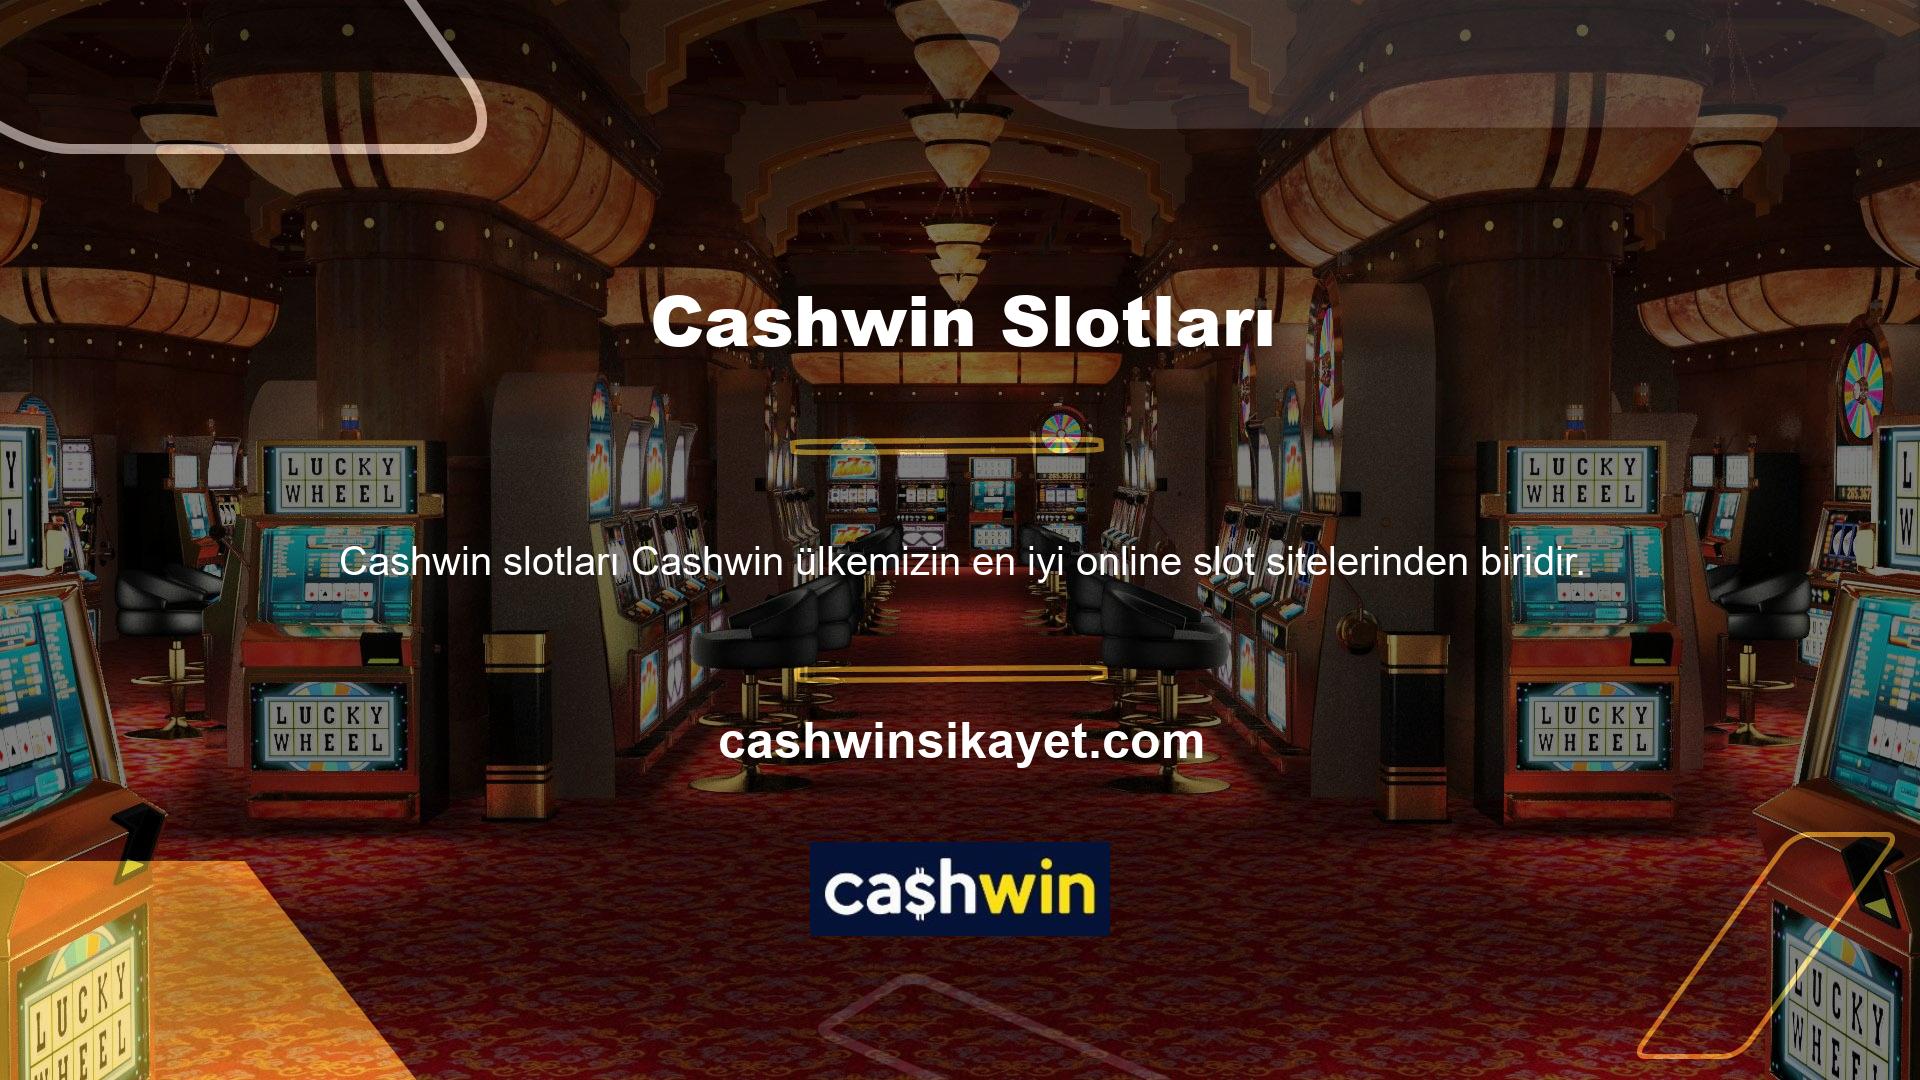 Cashwin, tüm Türk rulet oyunlarında en popüler ve saygın şirketlerden biridir